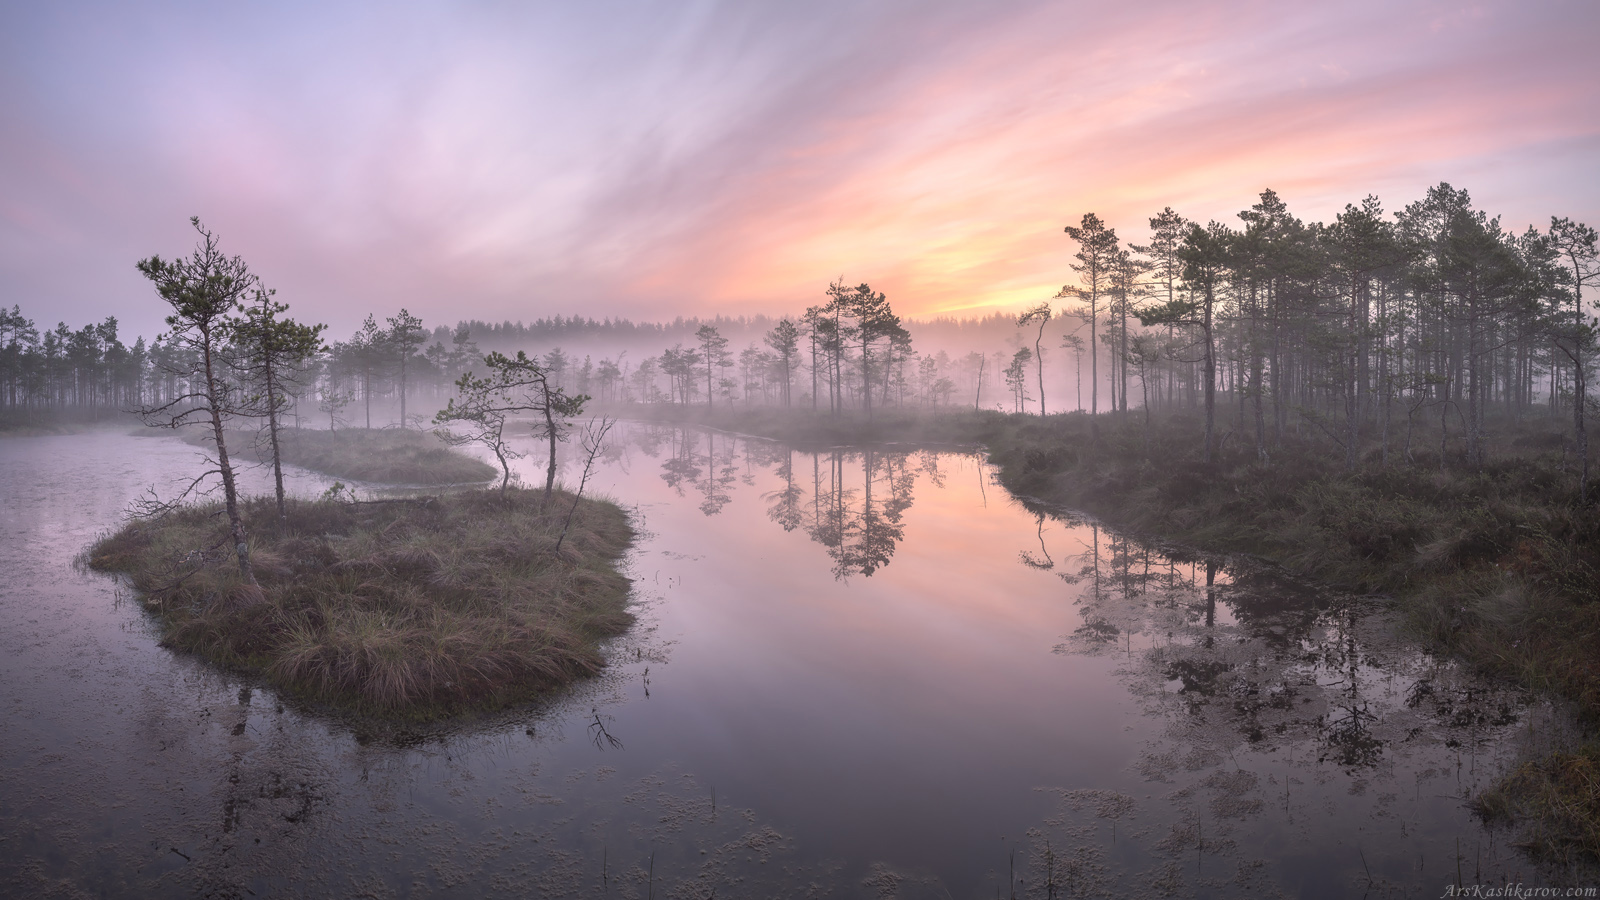 болота, природа ленинградской области, пейзажи ленобласти, утренний туман, живопись северных болот, фототур, Арсений Кашкаров